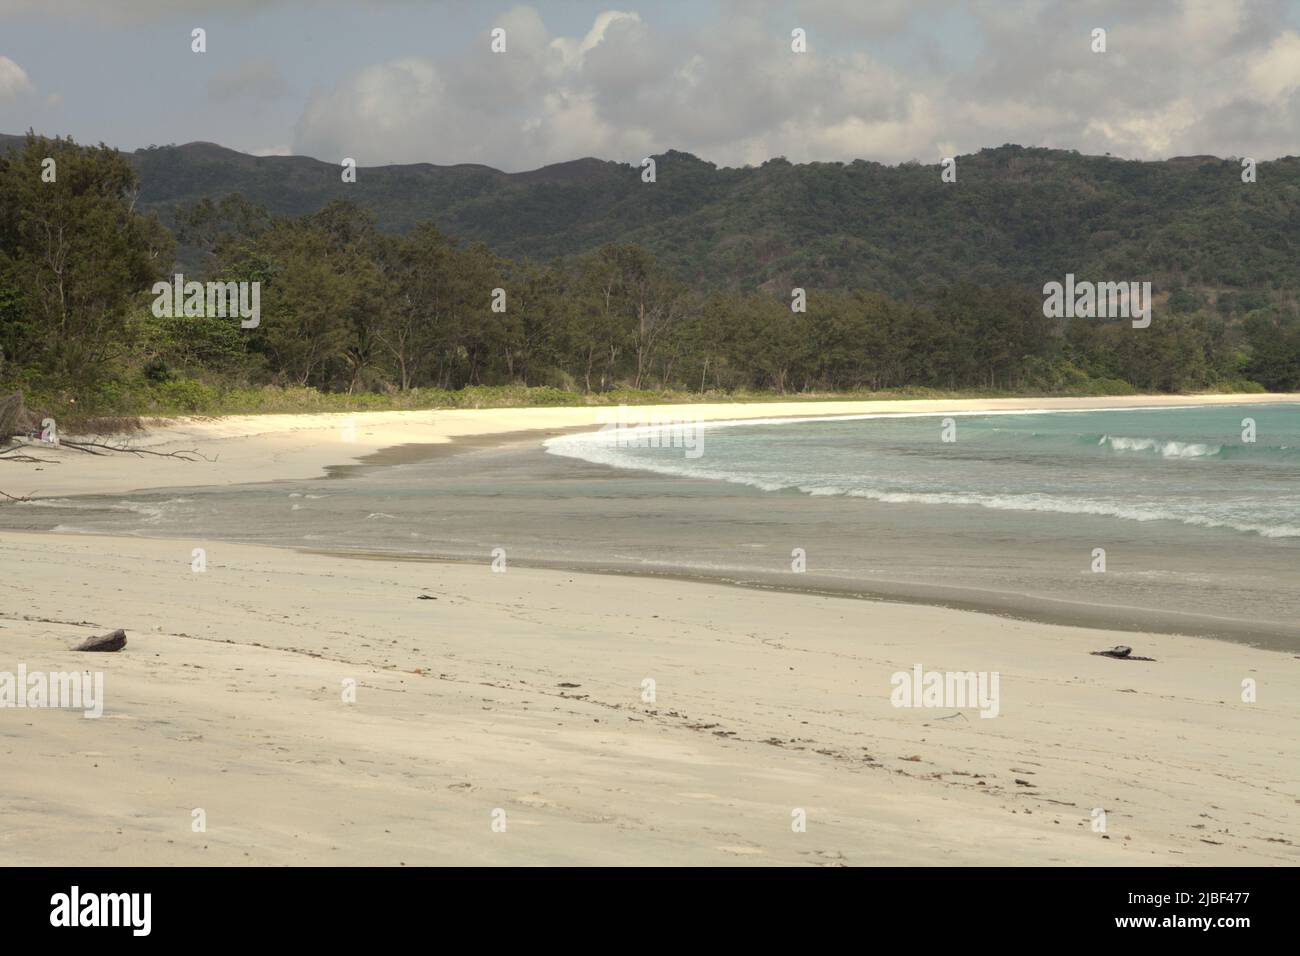 Sandstrand von Tarimbang in Tabung, East Sumba, East Nusa Tenggara, Indonesien. Dieser Strand könnte zu den halben Sandstränden der Welt gehören, die bis zum Ende des Jahrhunderts verschwinden könnten, wenn der Klimawandel unvermindert weitergeht, wie Klimawissenschaftler in ihrer Publikation über Nature Climate Change vom März 2020 berichteten. Stockfoto